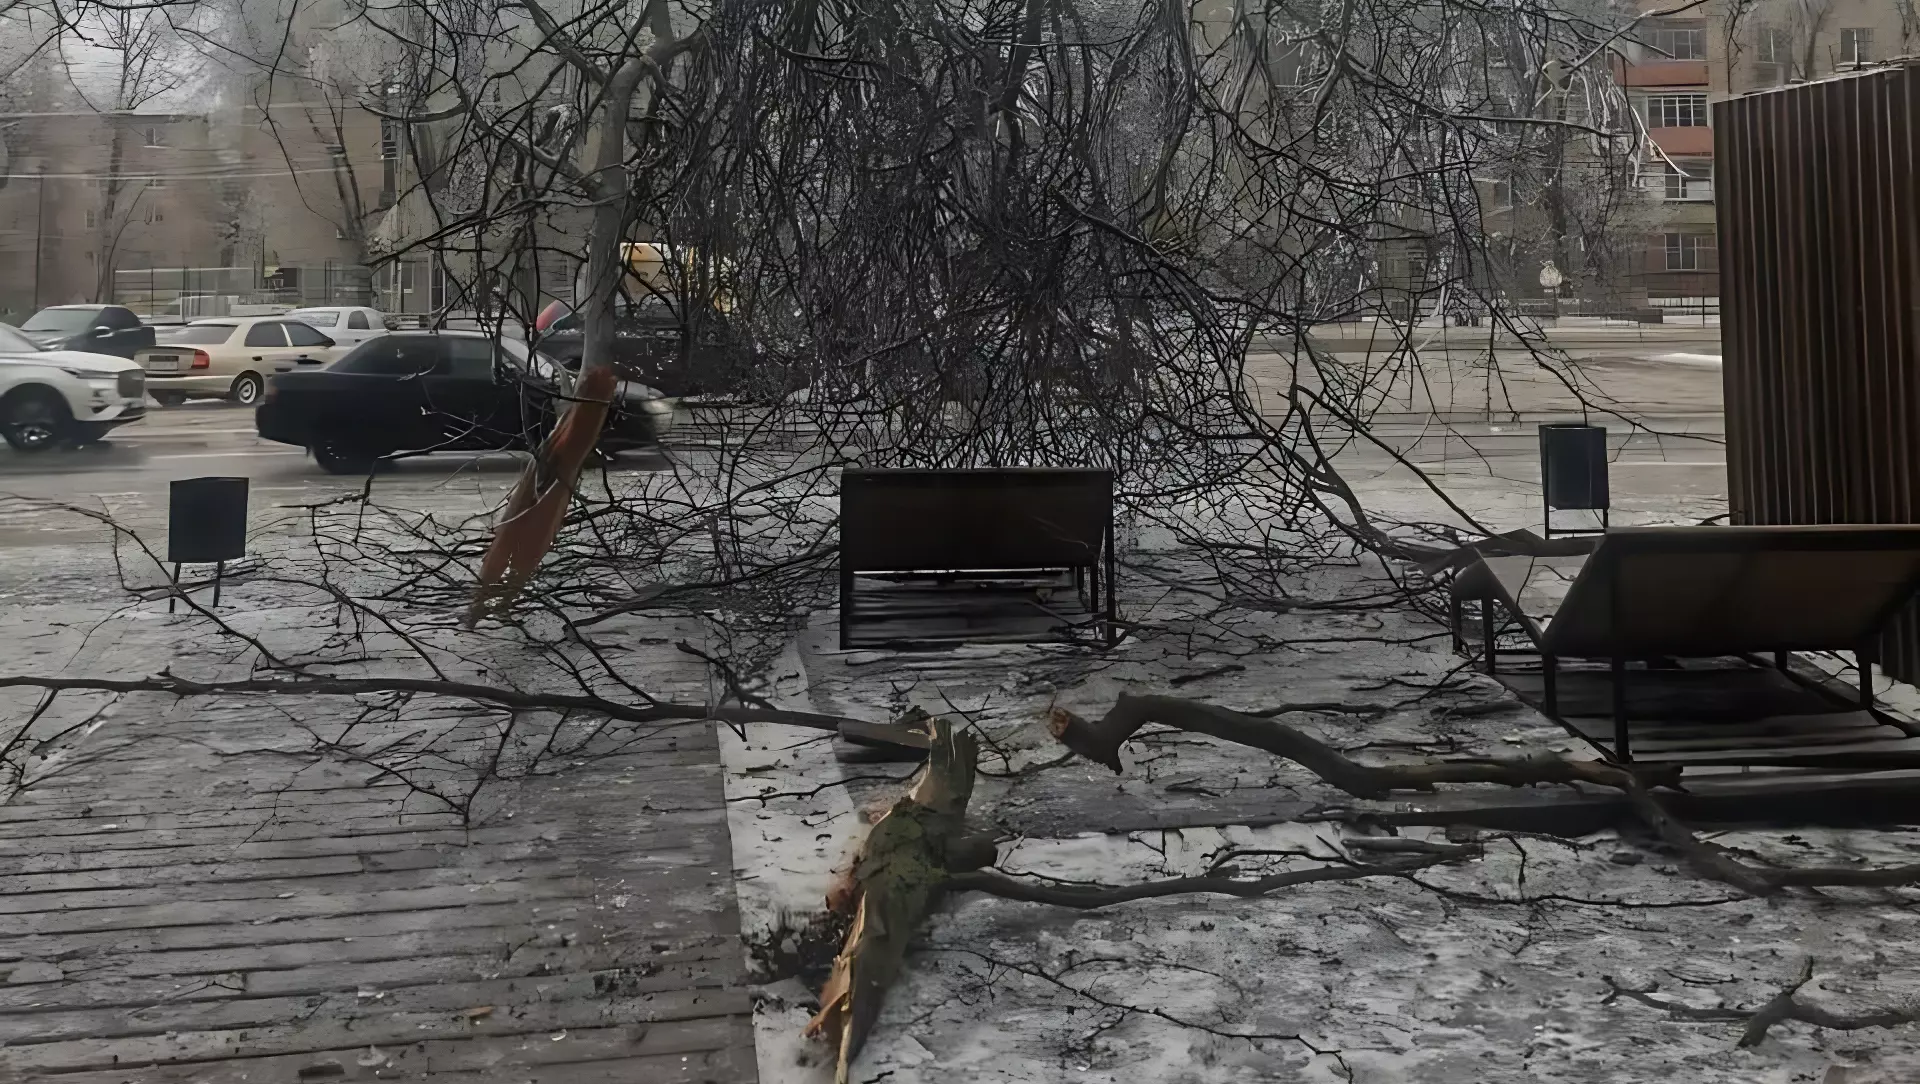 «Кажется, все плохо»: дерево рухнуло на человека в Ростове-на-Дону 15 декабря